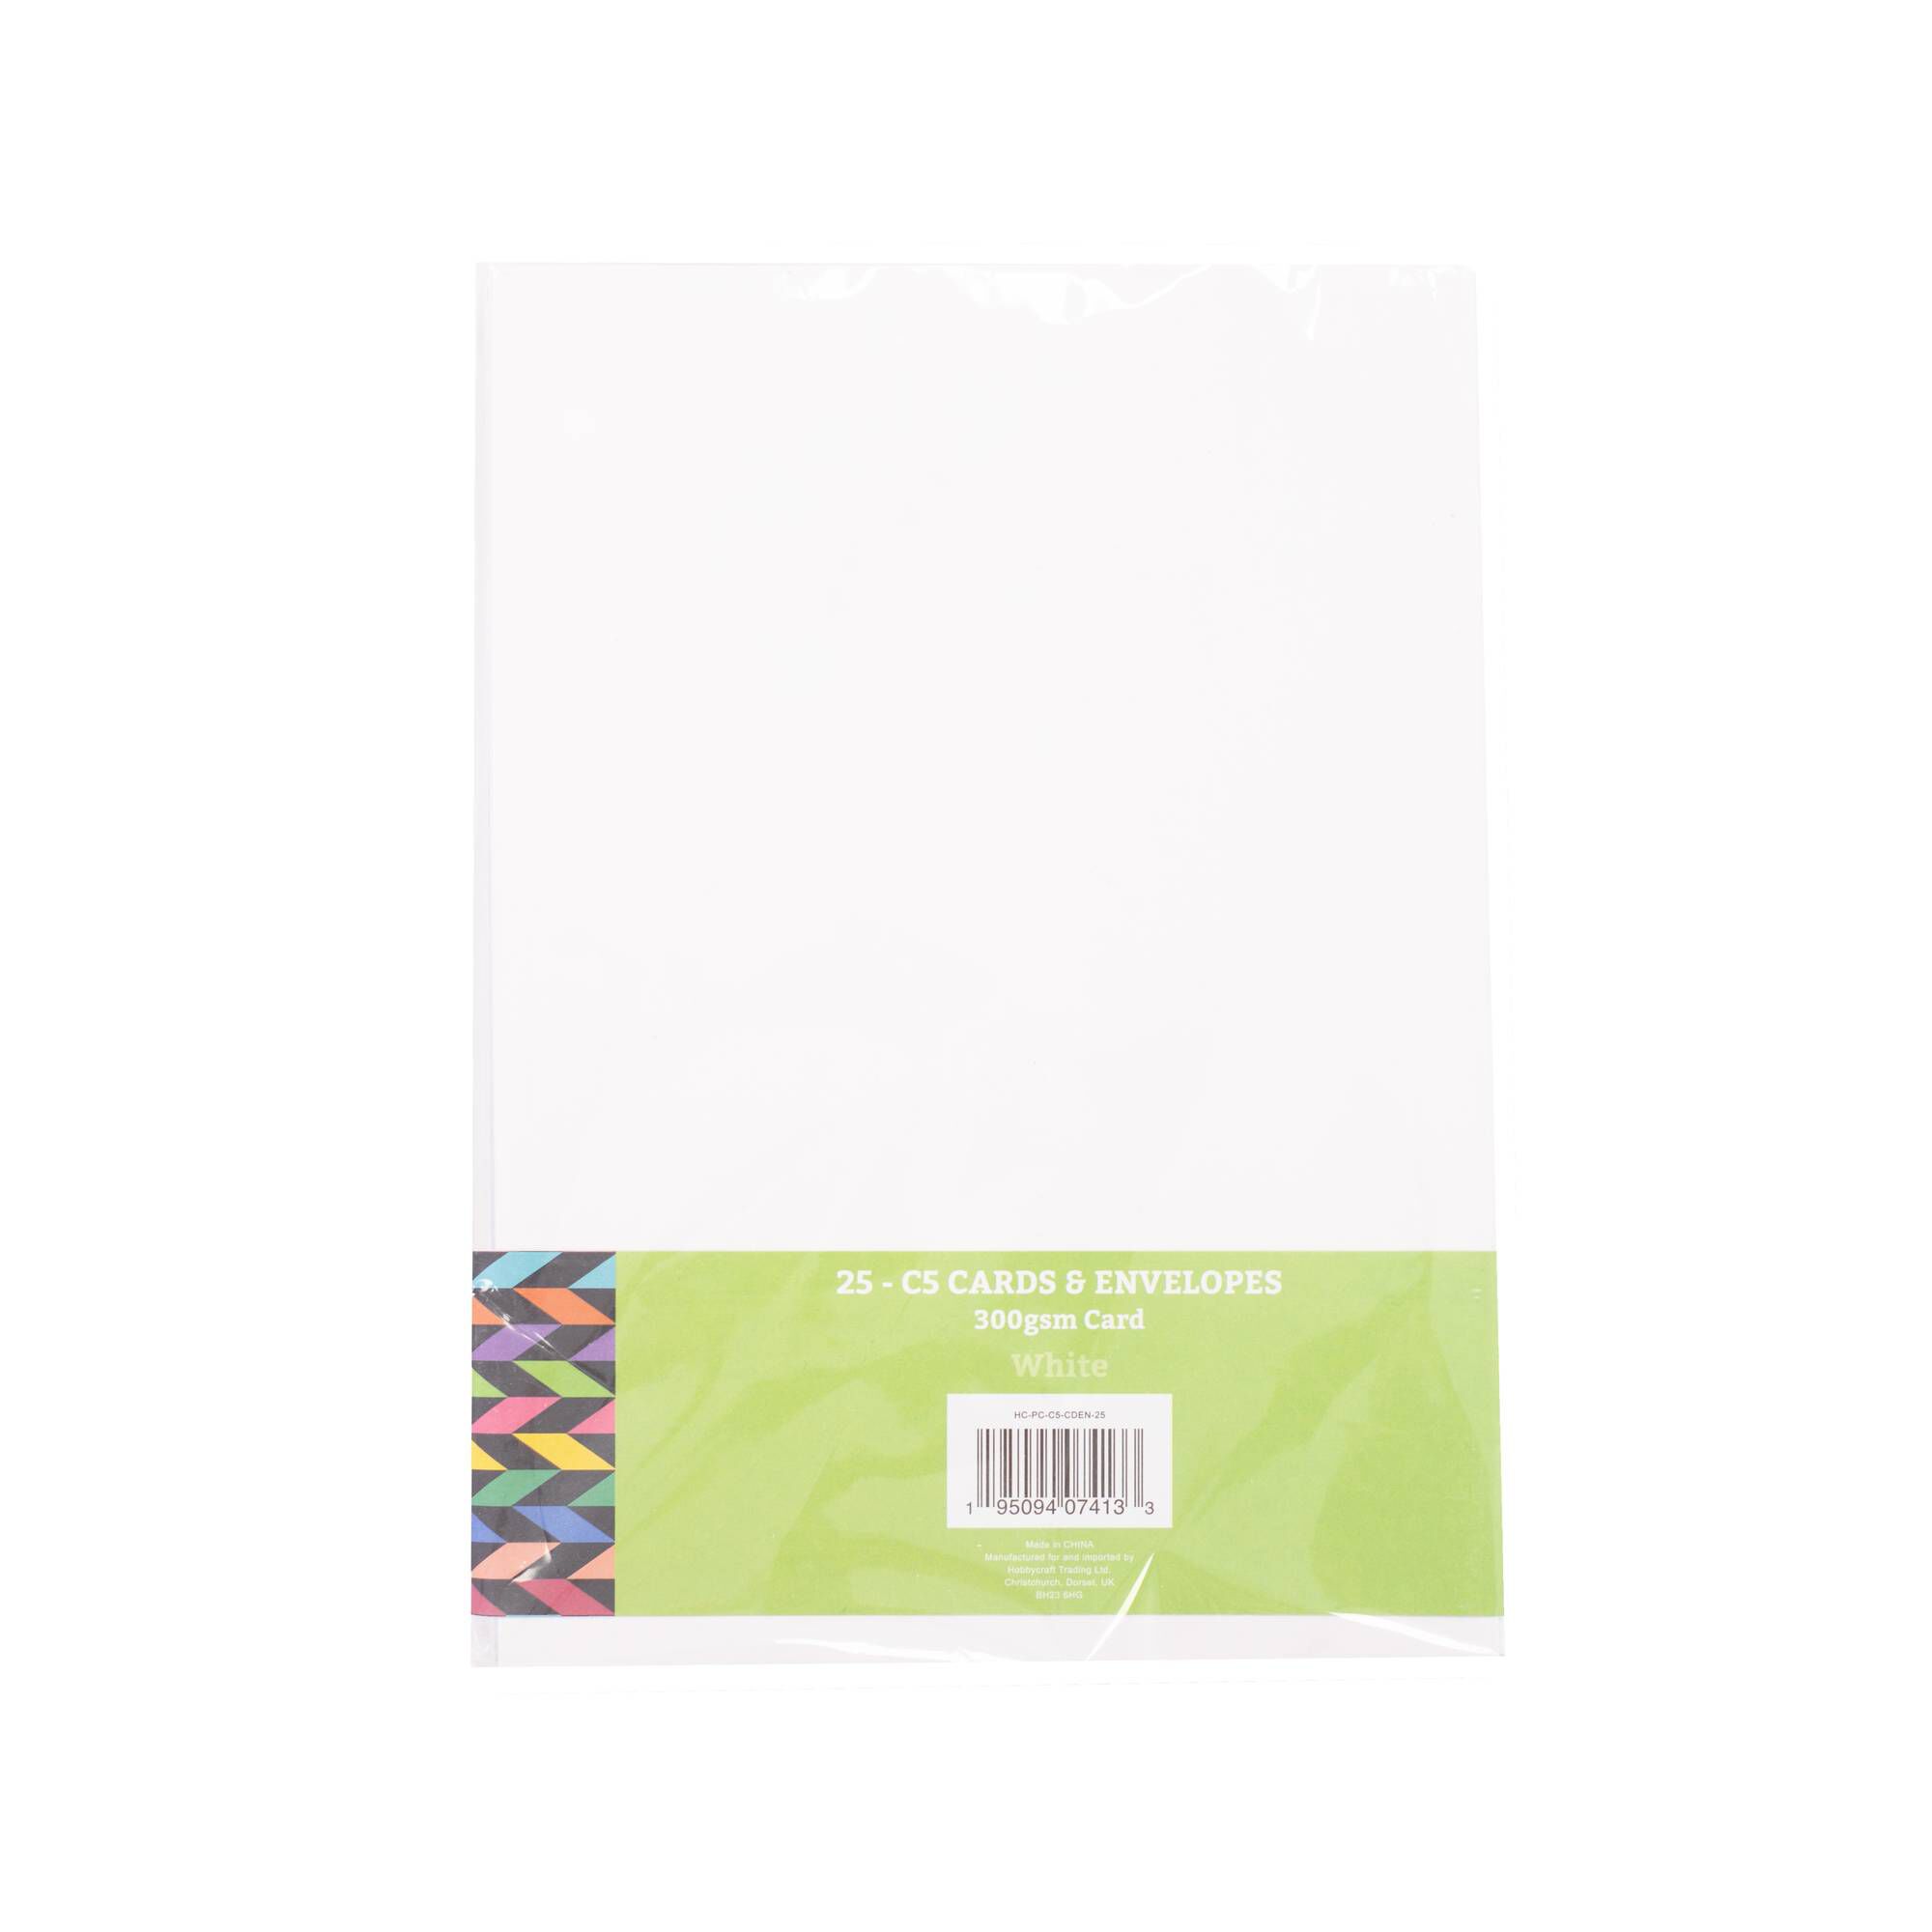 White Cards and Envelopes C5 25 Pack | Hobbycraft